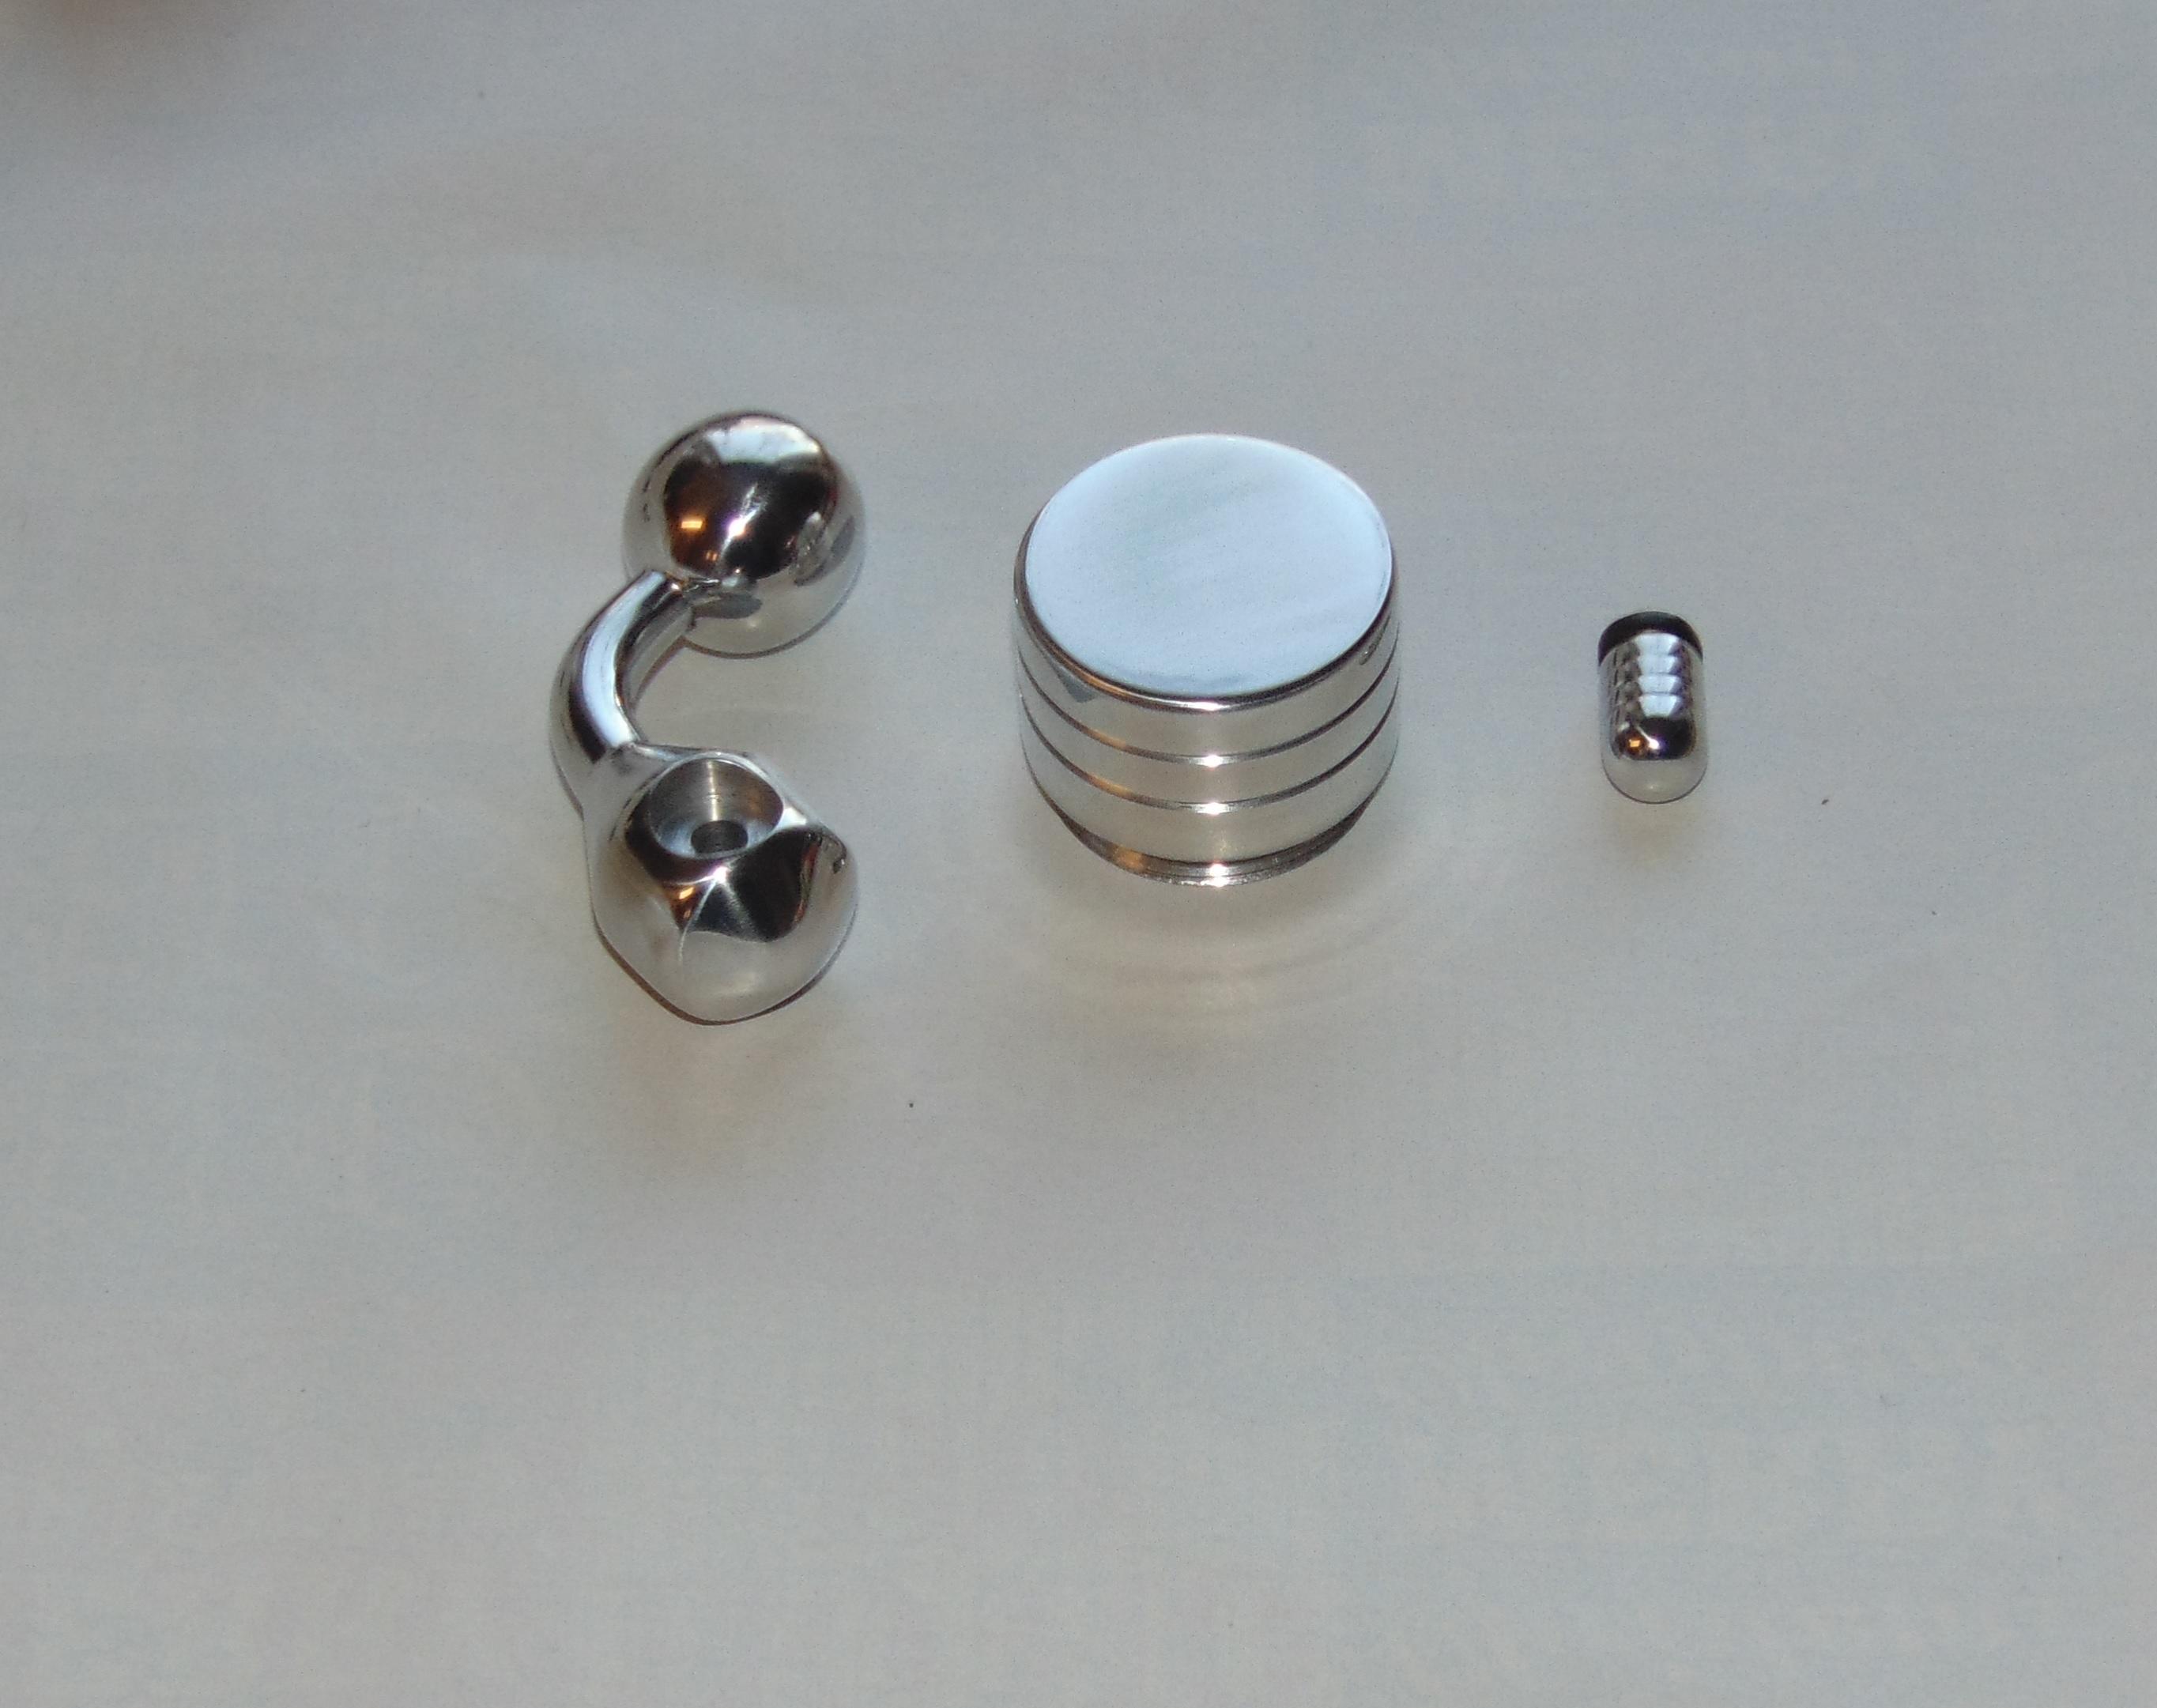 Polished Aluminium bolt handle, cylinder cap and safety knob set.